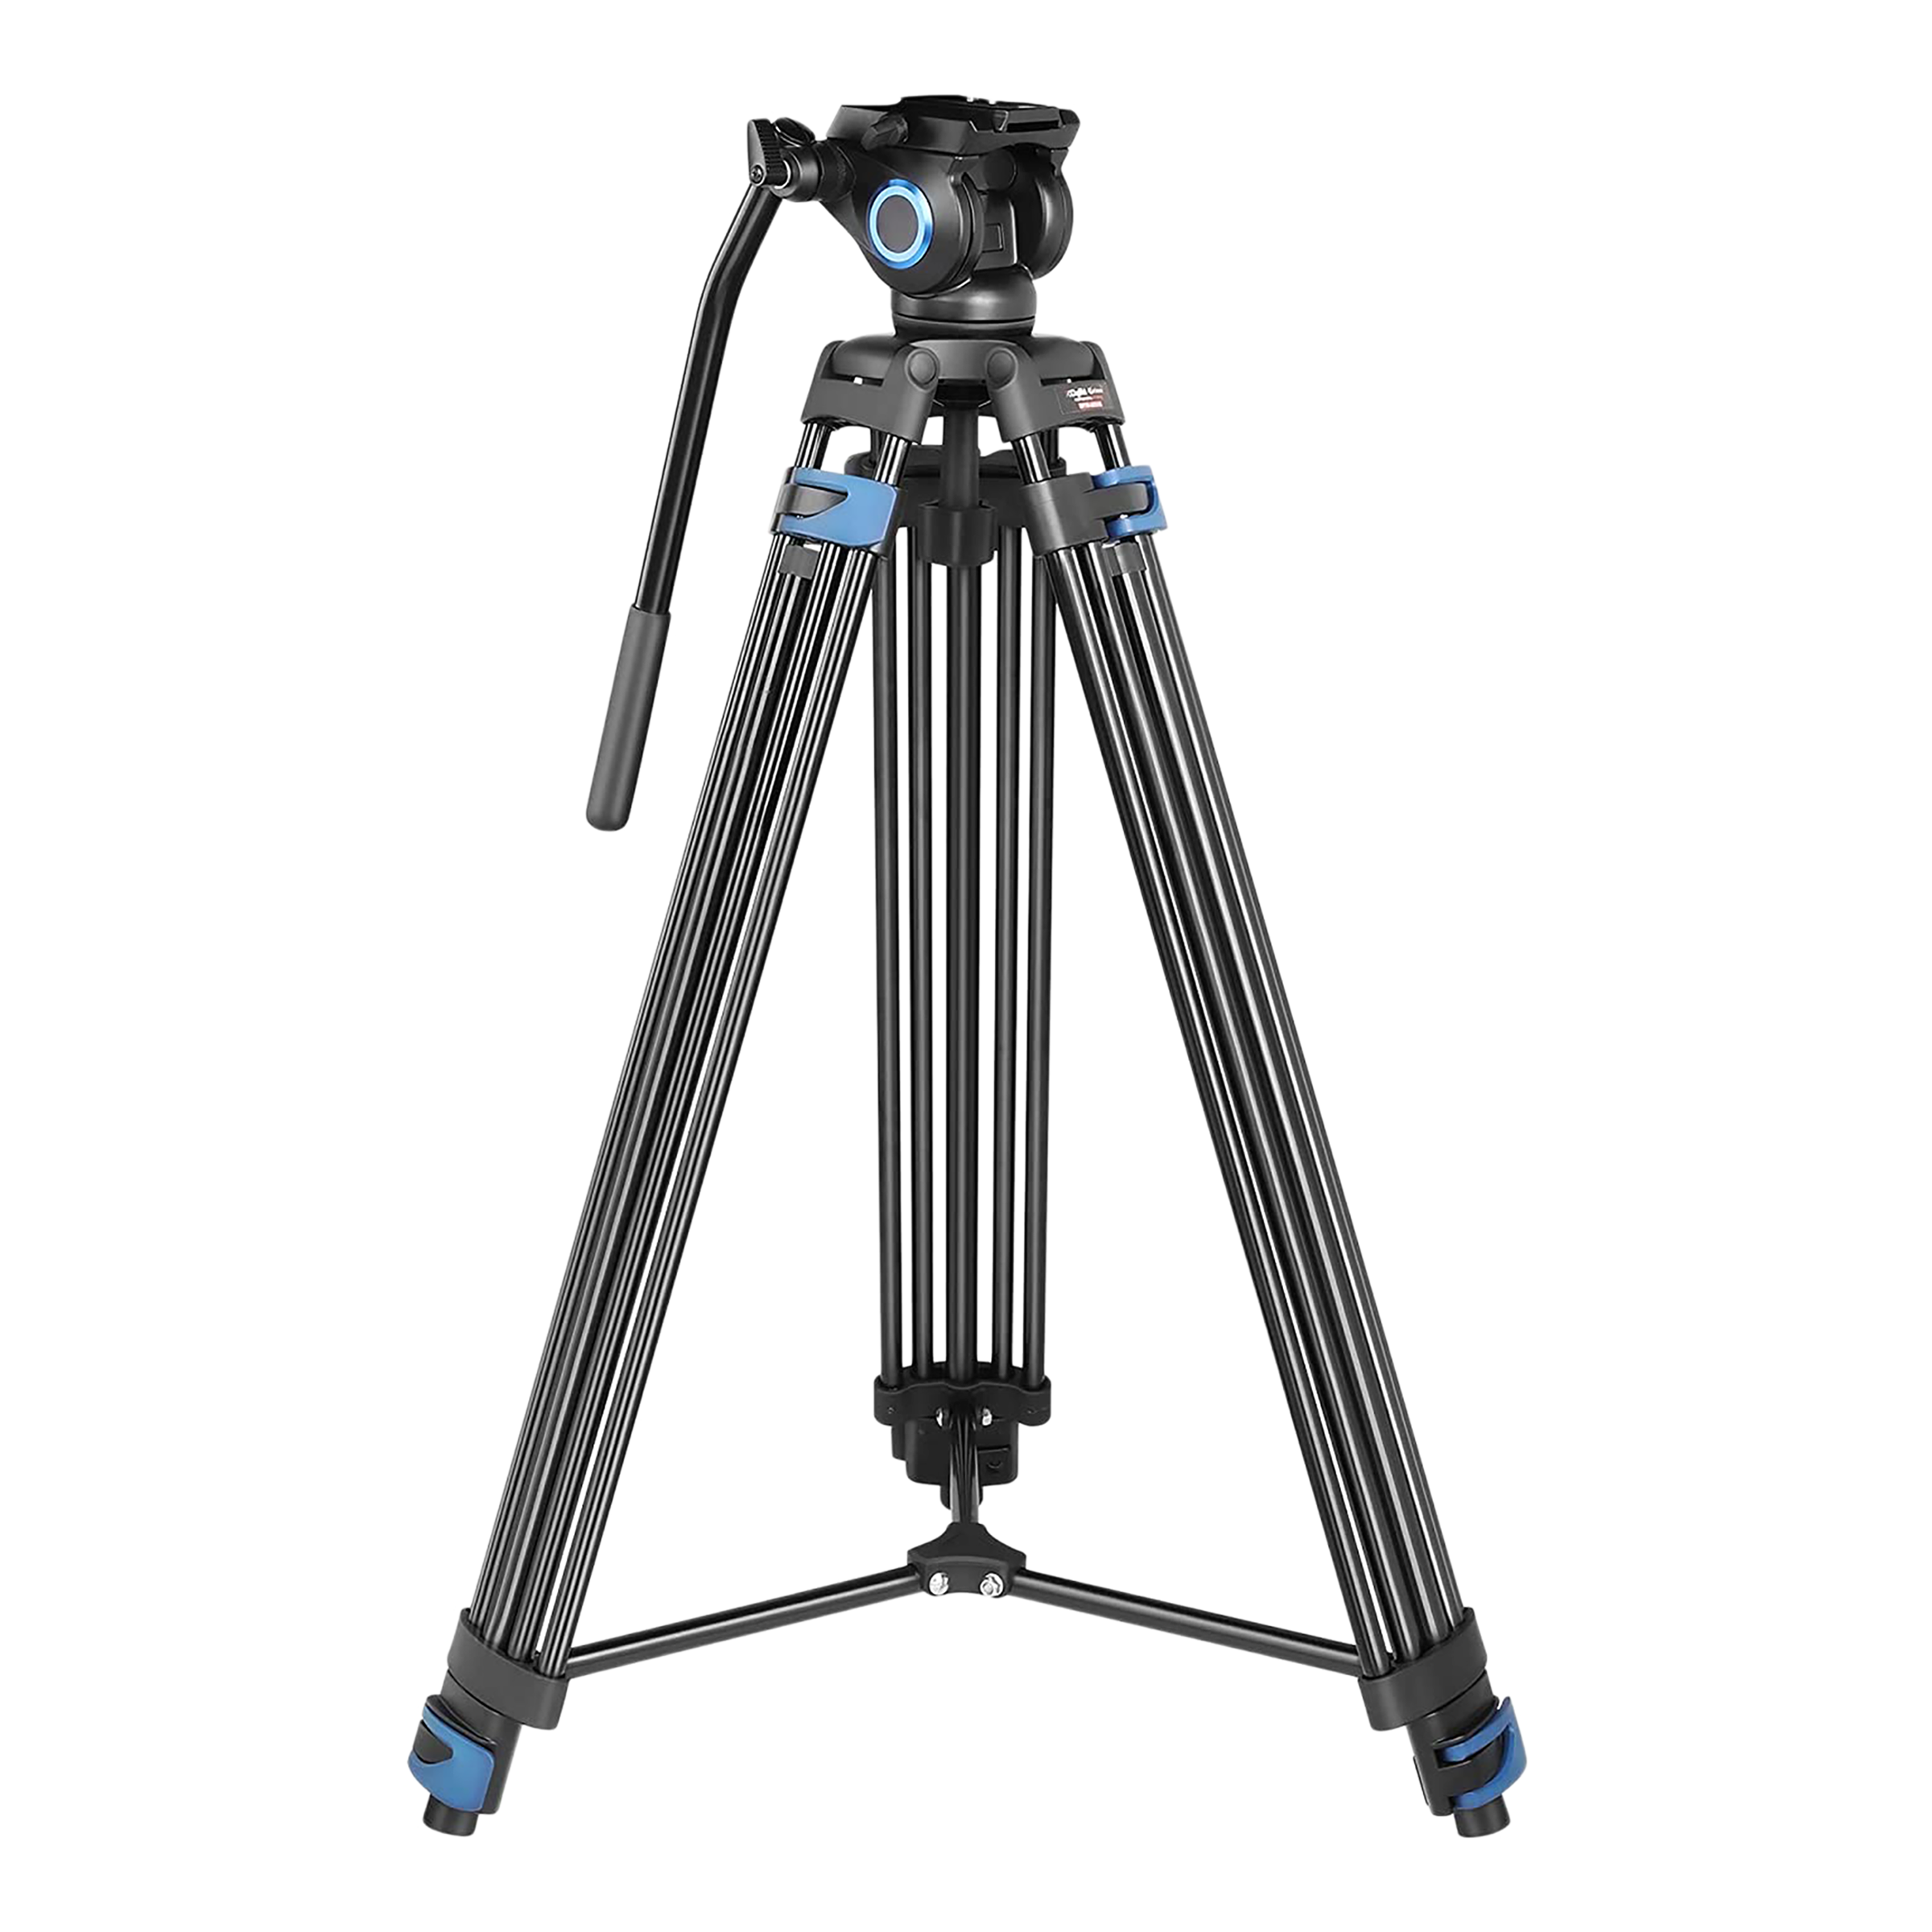 DigiTek Platinum DPTR 605 VD 183cm Adjustable Tripod for Camera (2 Way Head with Adjustable Pan, Black)